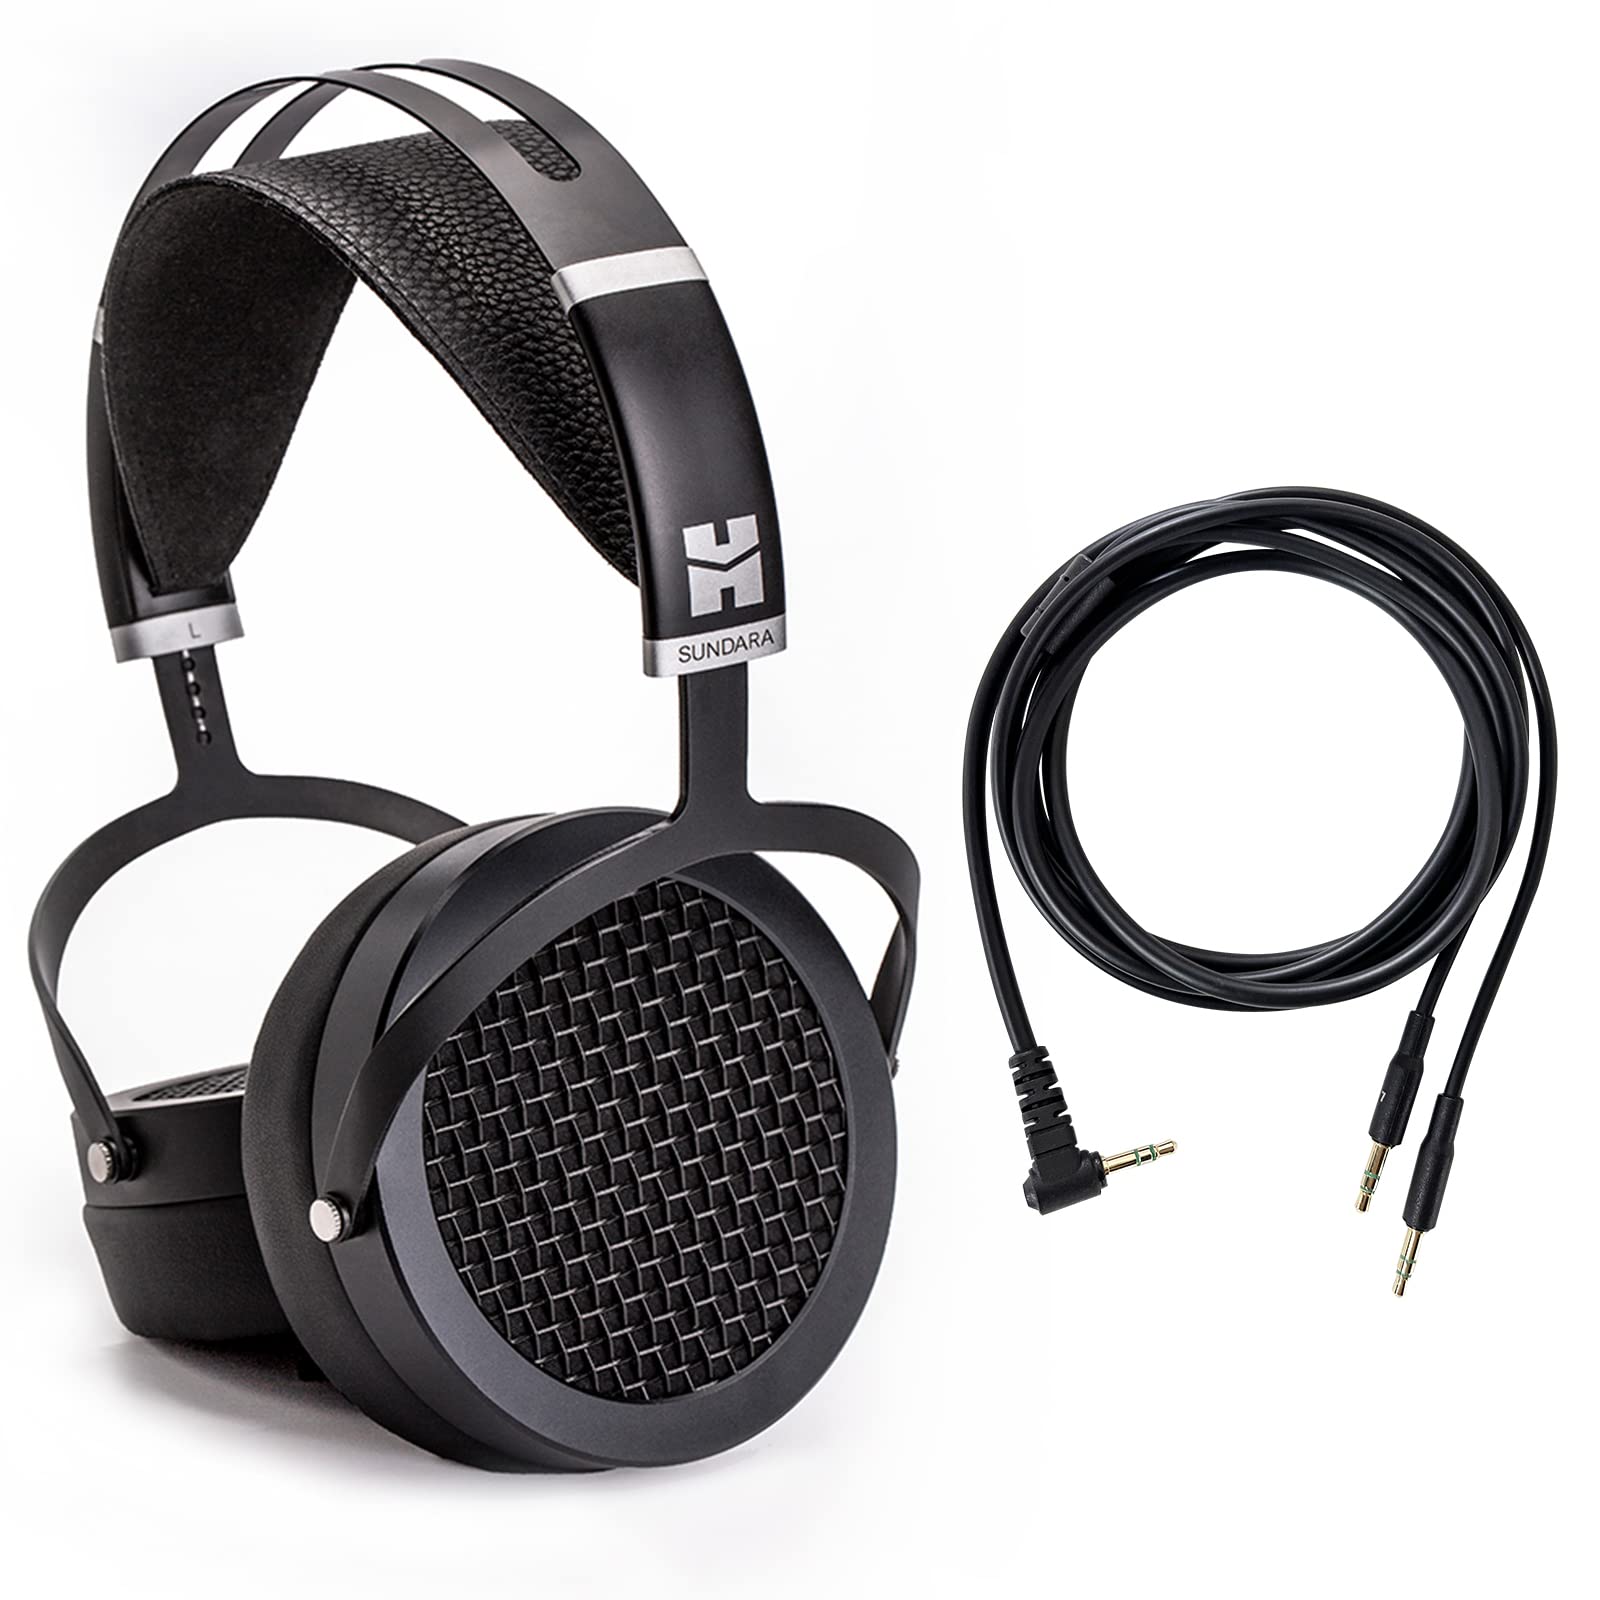 HIFIMAN SUNDARA 高保真耳机，带 3.5 毫米连接器，平面磁性，舒适贴合，带更新耳垫 - 黑色，...